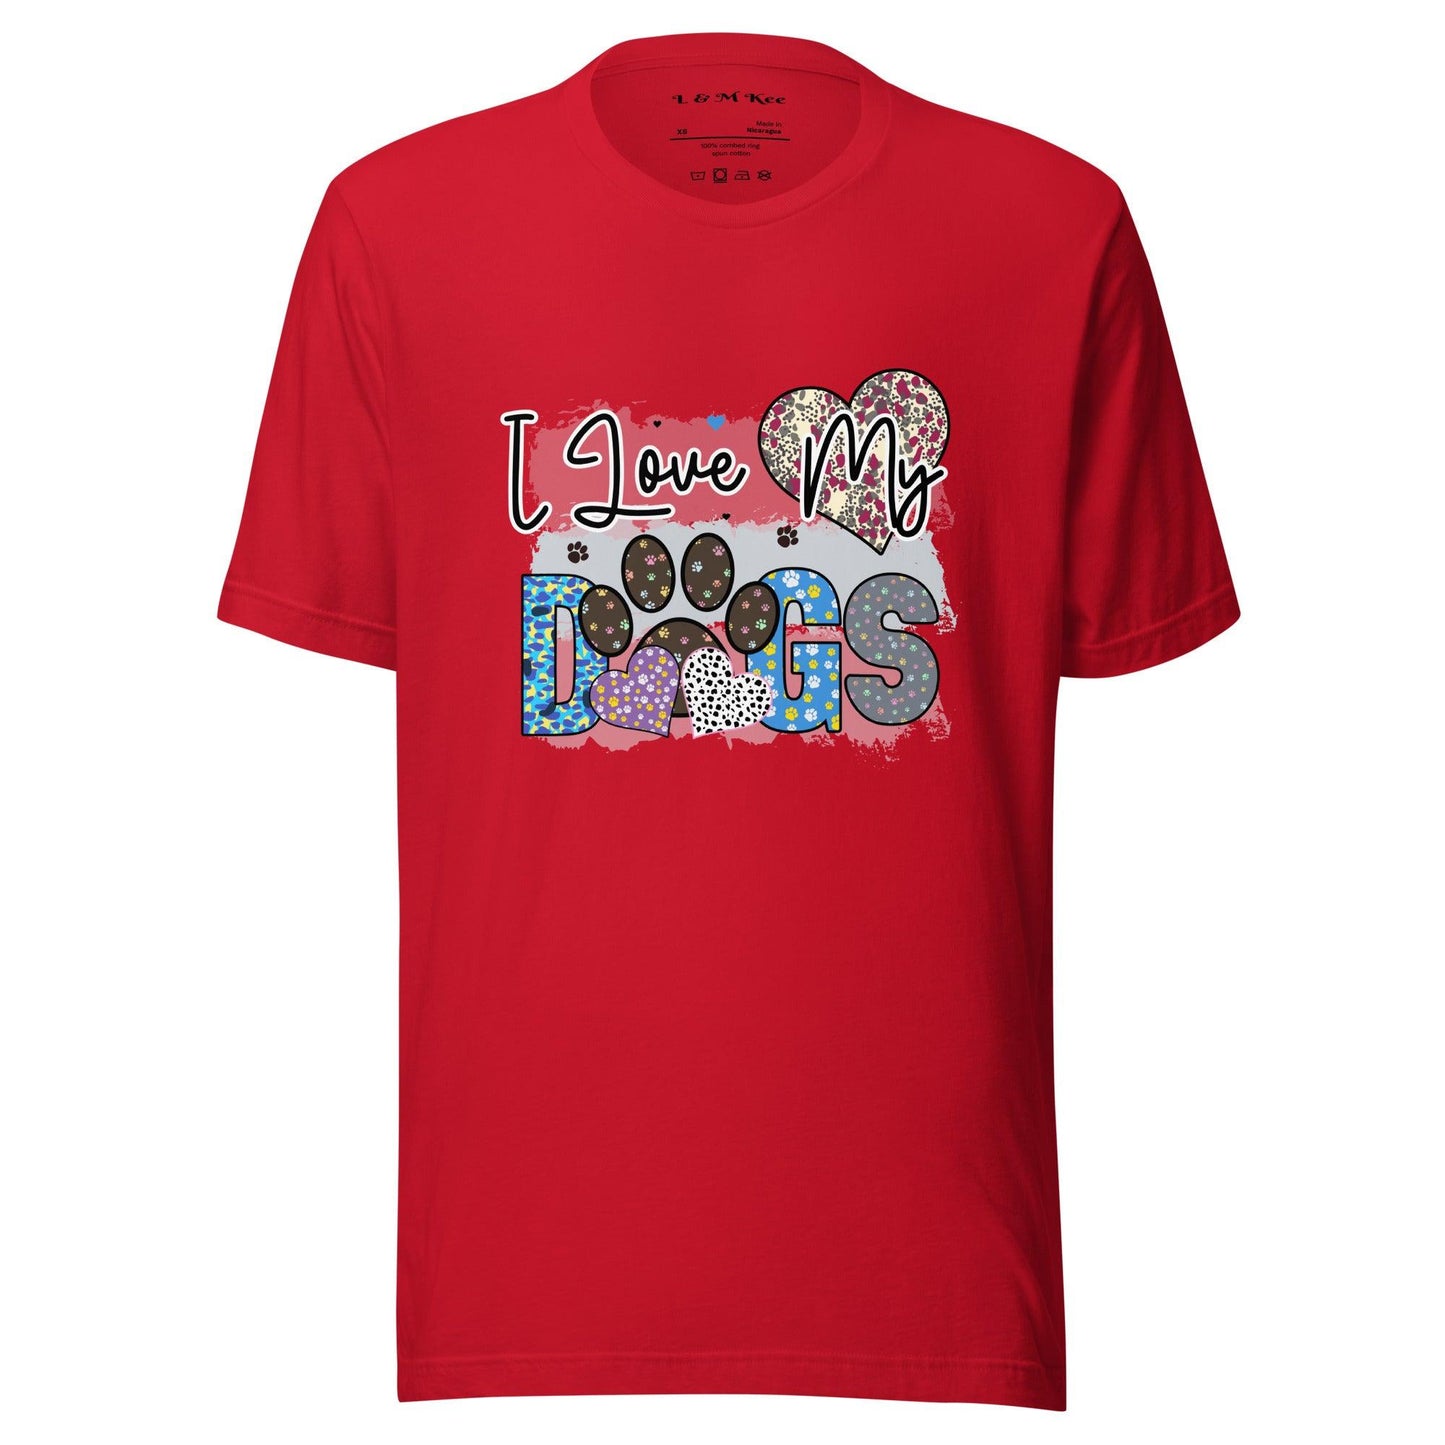 I Love My Dogs T-Shirt - L & M Kee, LLC